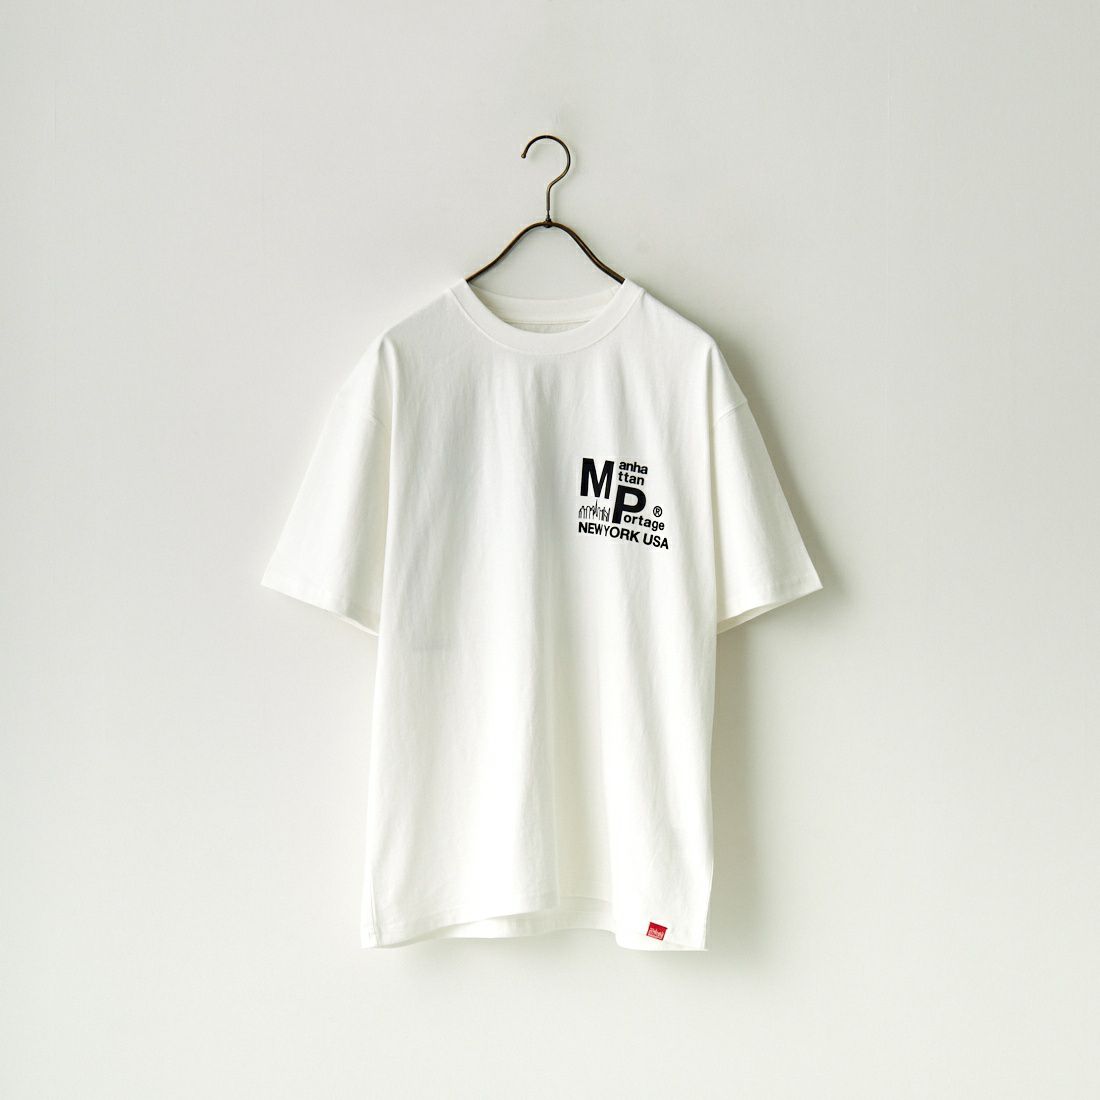 MANHATTAN PORTAGE [マンハッタンポーテージ] ショートスリーブプリントTシャツ [23FW-MP-M554] 01 WHITE